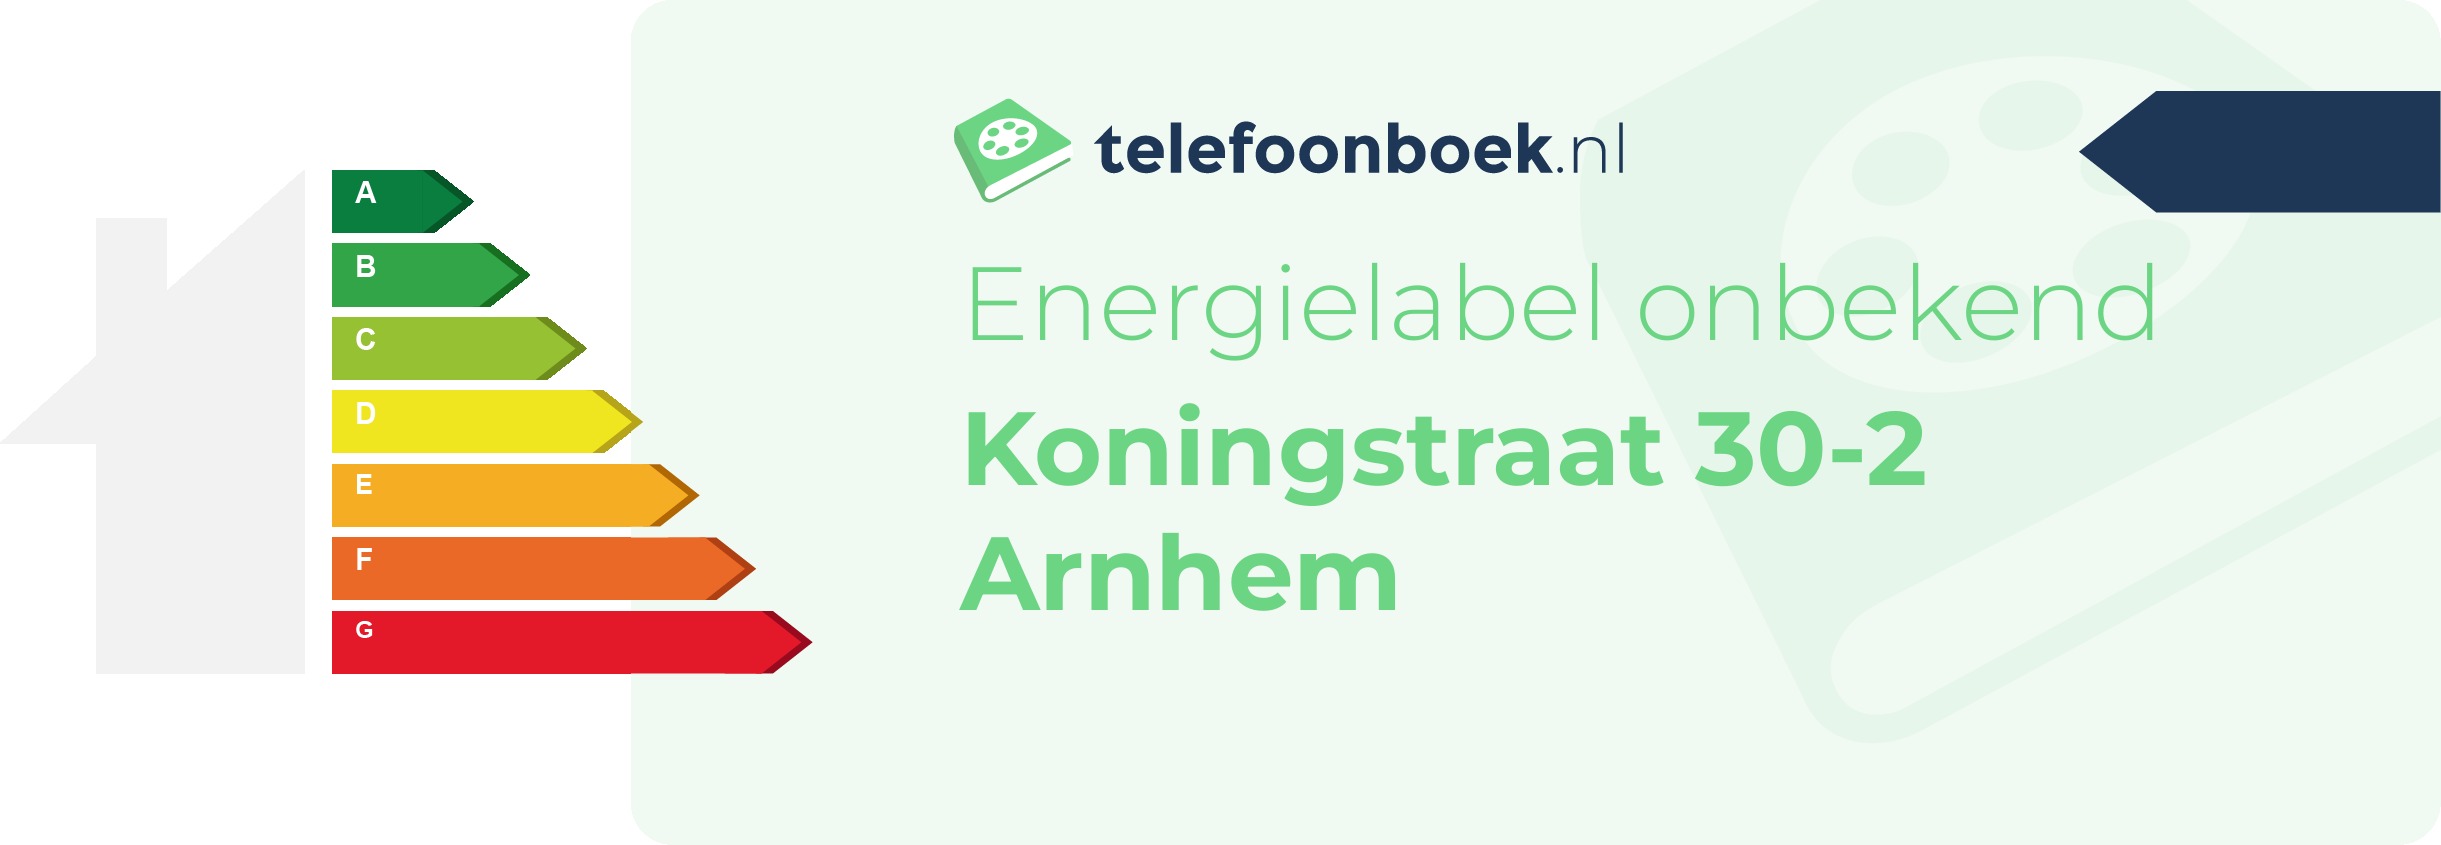 Energielabel Koningstraat 30-2 Arnhem